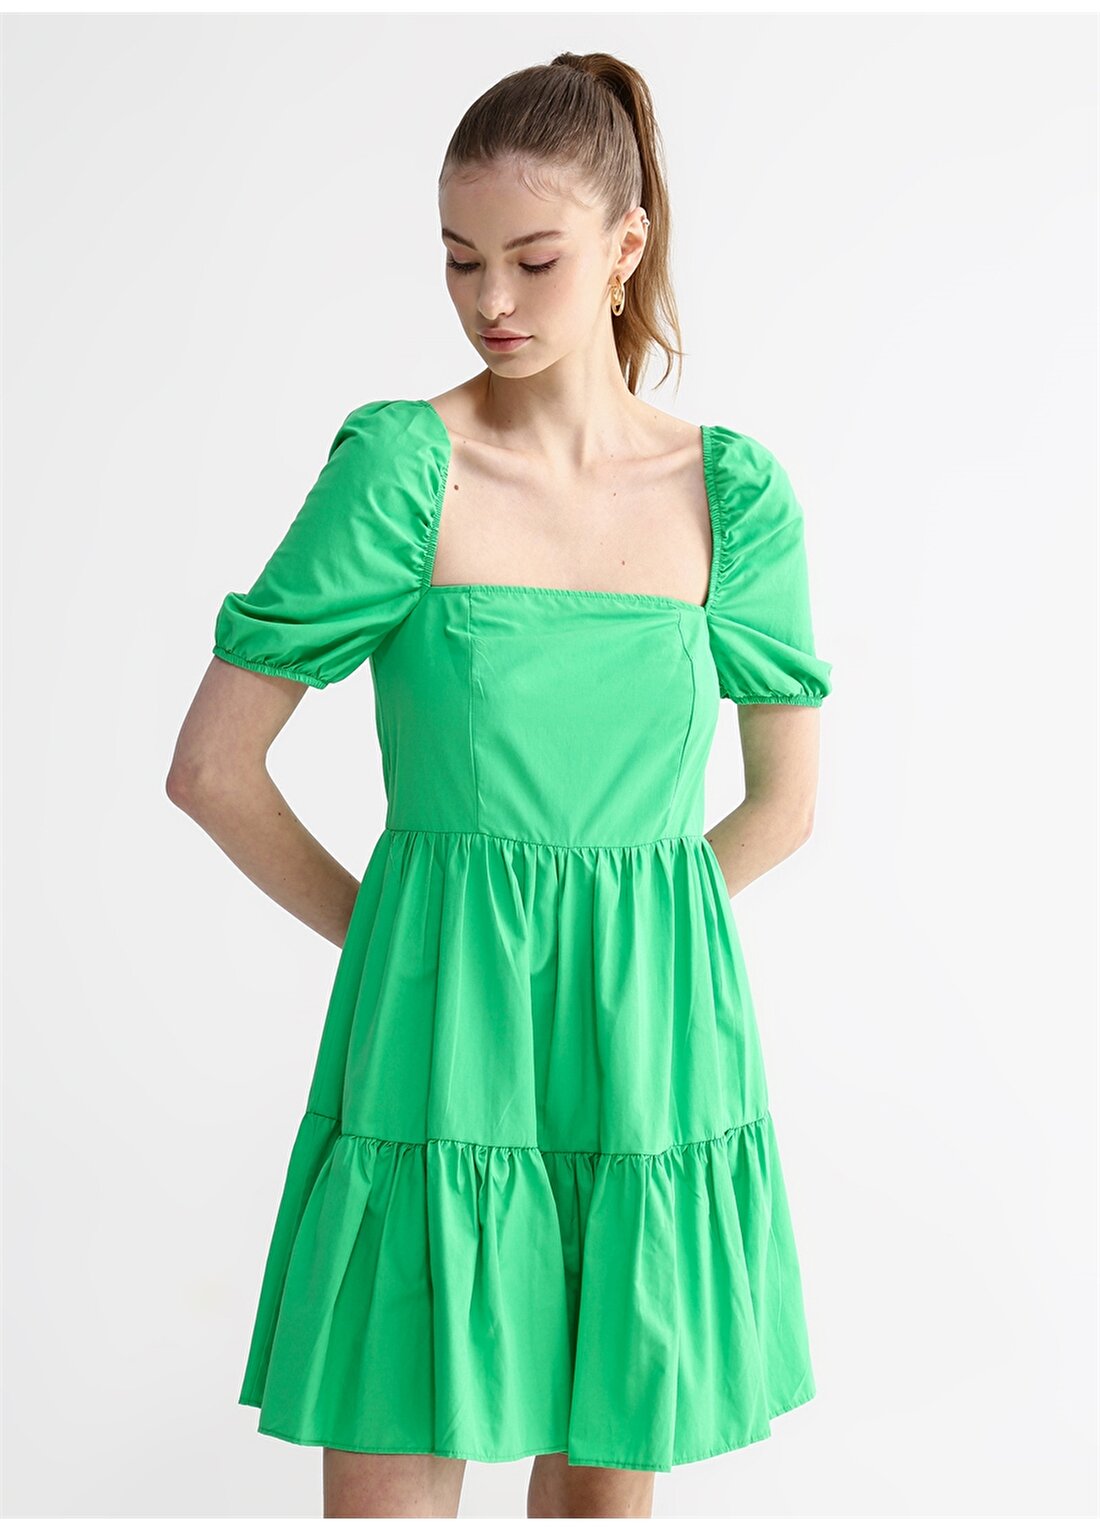 Aeropostale Yeşil Kadın Kısa Kollu Mini Düz Kare Yaka Elbise PONTE-Y